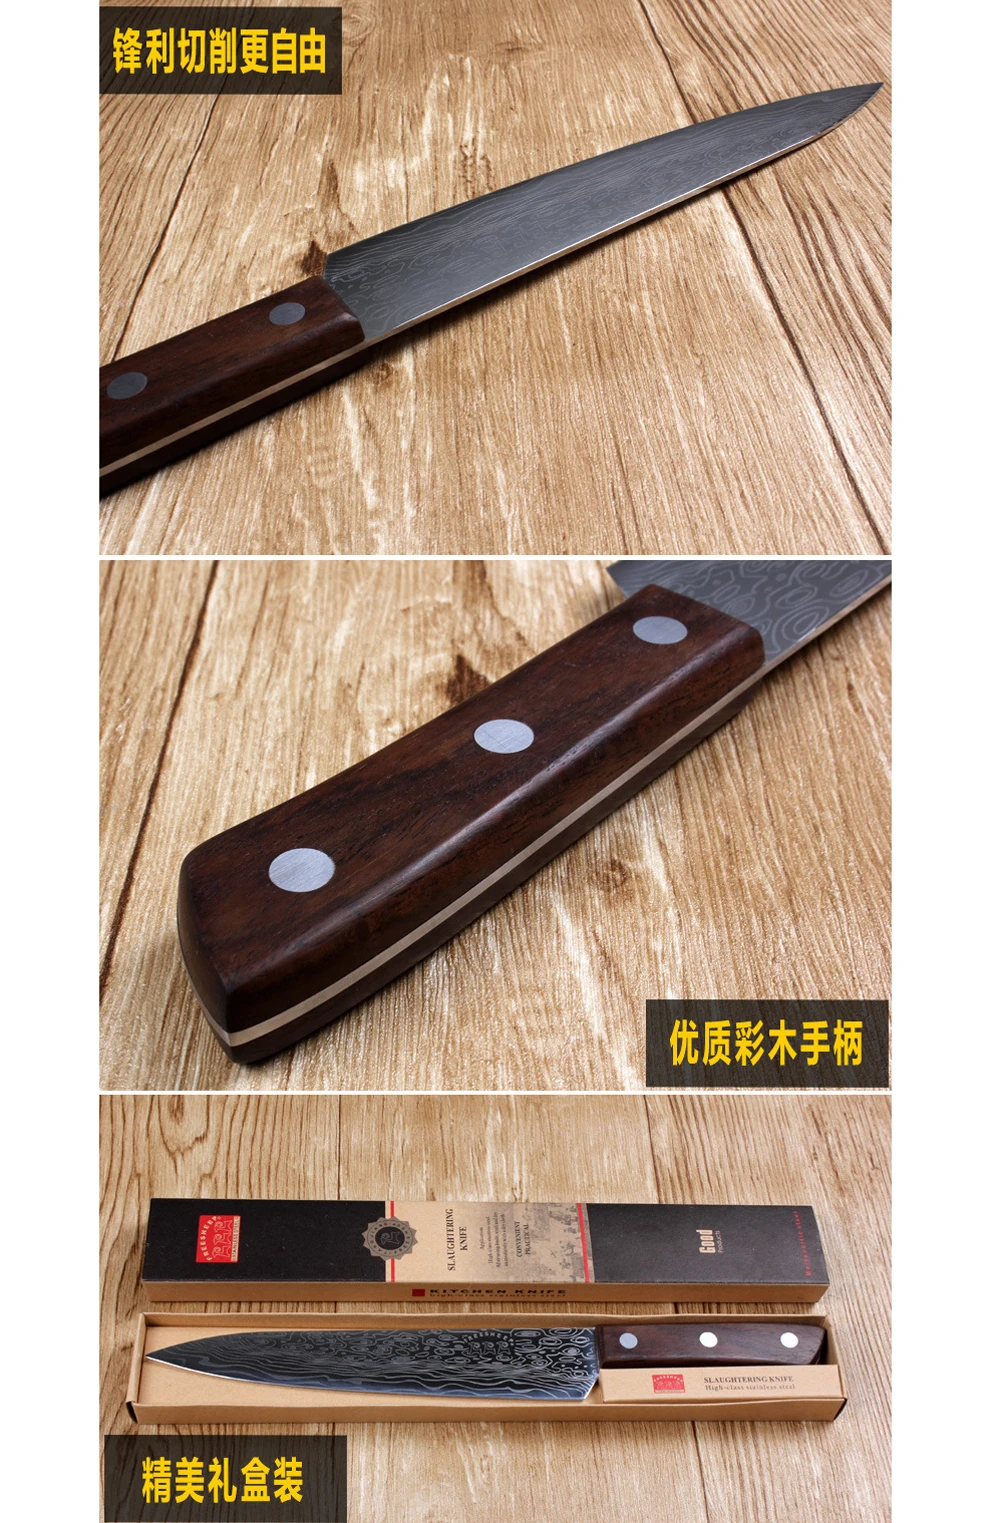 [ВИДЕО] 1 шт. кухонные инструменты-ножи 9 дюймов 10 дюймов японский кухонный нож 7CR17 нож из нержавеющей стали